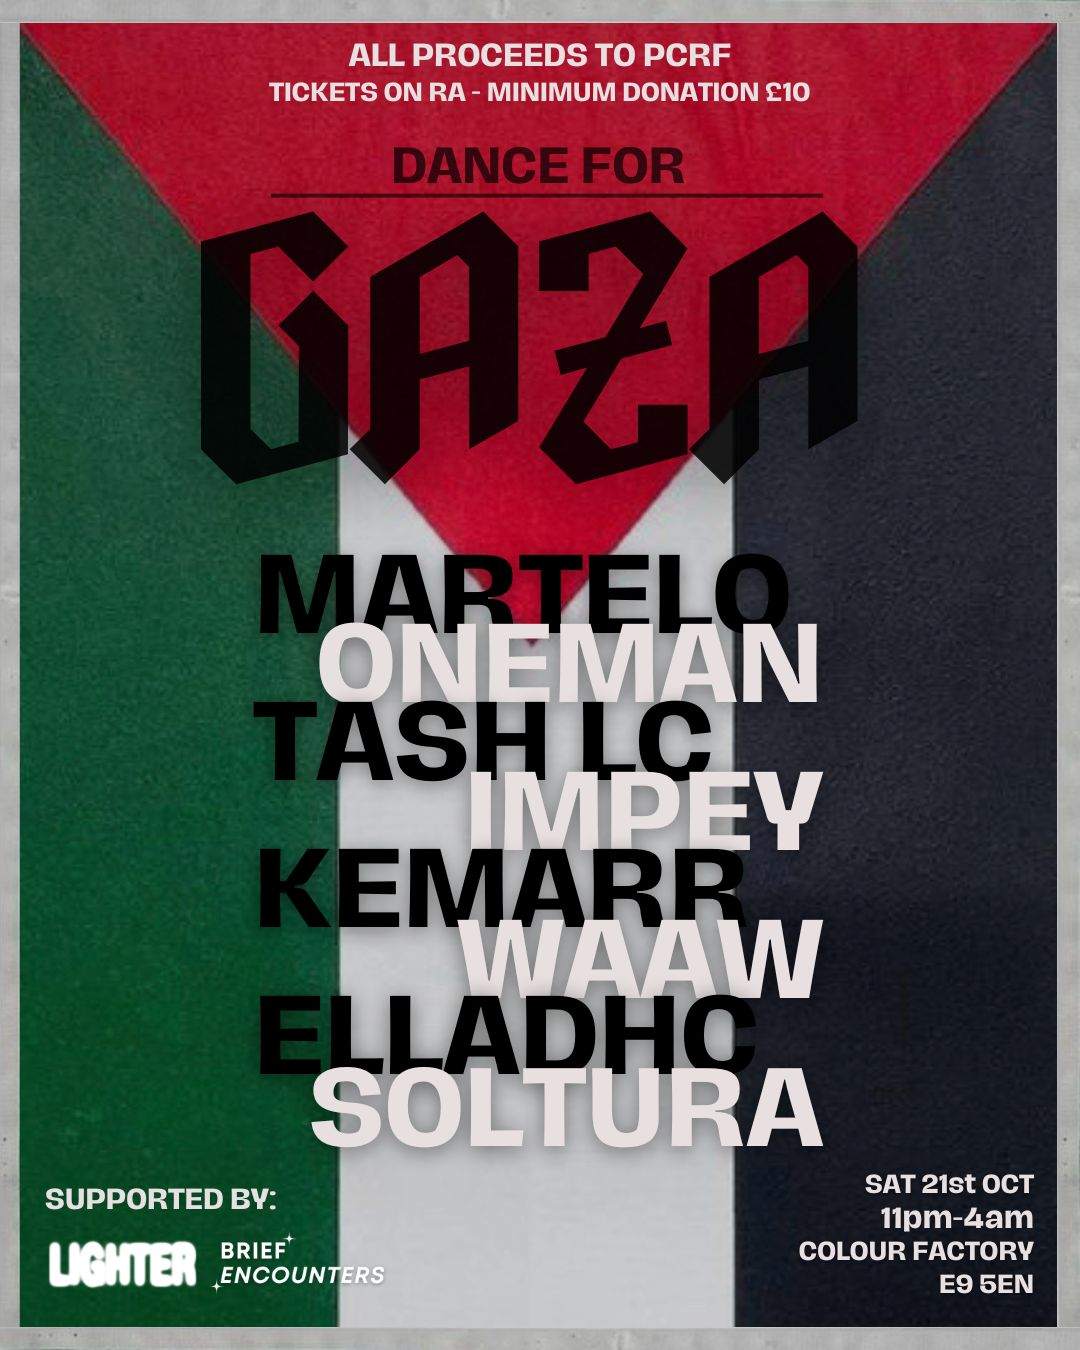 Dance for Gaza - フライヤー表